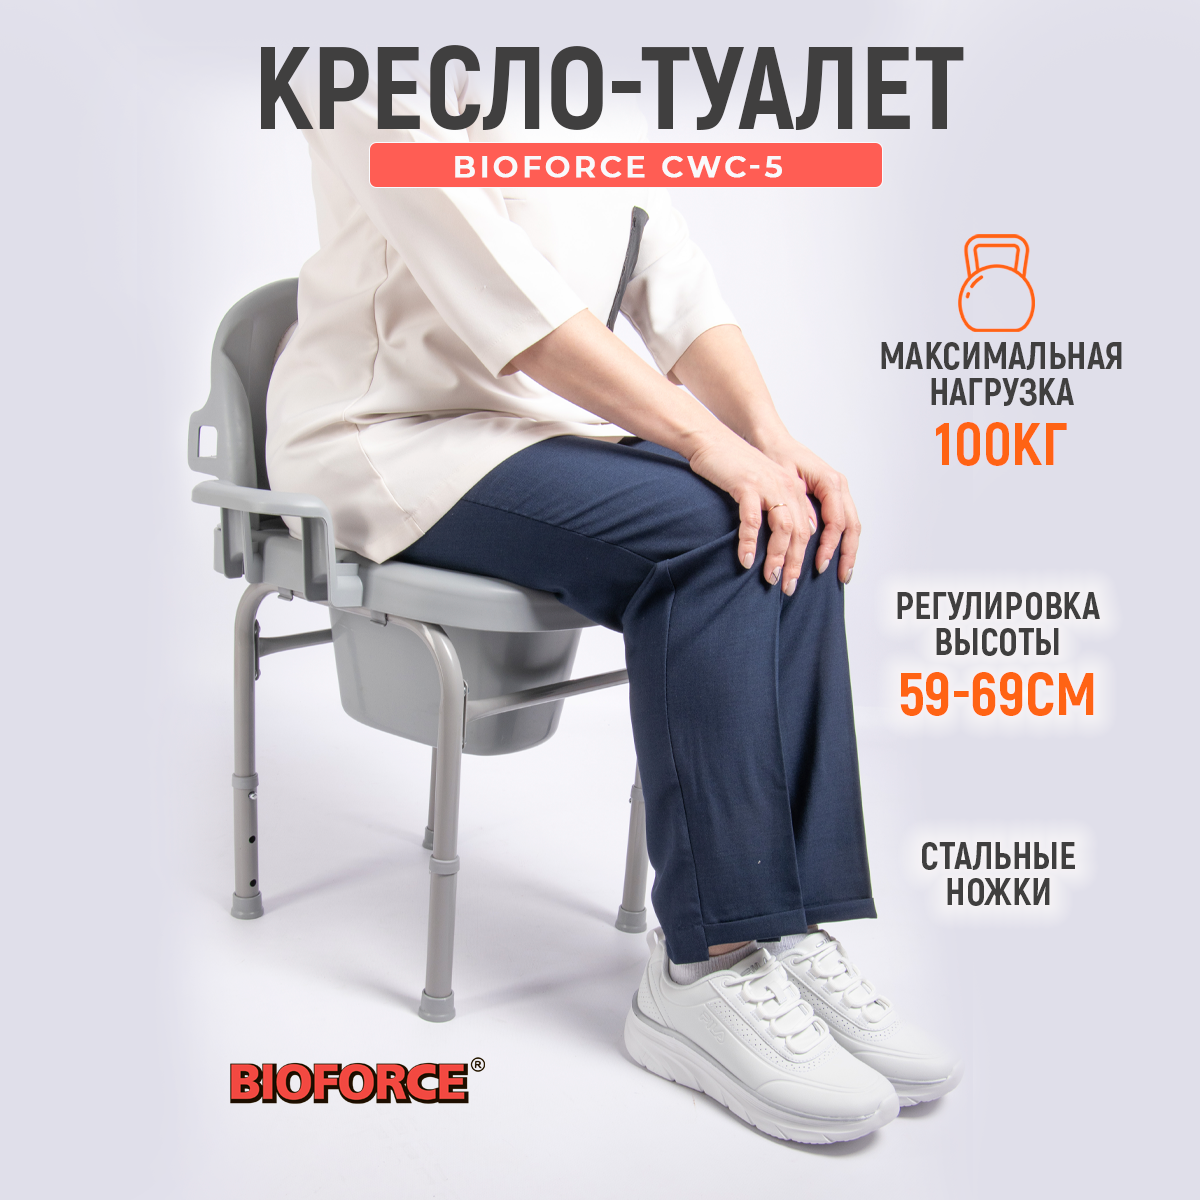 Биотуалет кресло-туалет BIOFORCE CWC-5